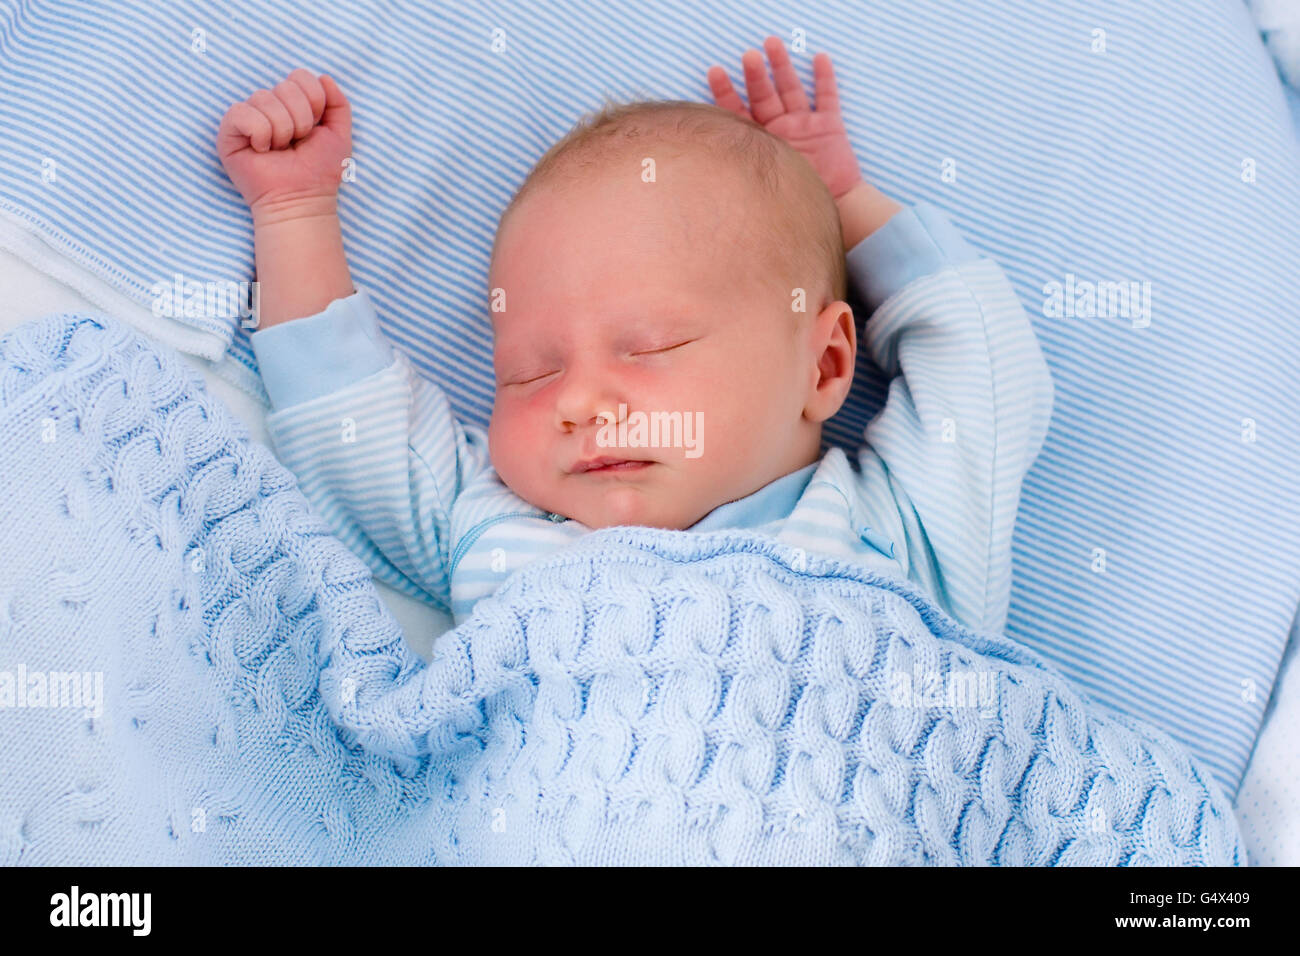 Neugeborenes Baby junge im Bett. Neues Kind geboren, unter einer blauen gestrickte Decke schlafen. Kinder schlafen. Bettwäsche für Kinder. Stockfoto